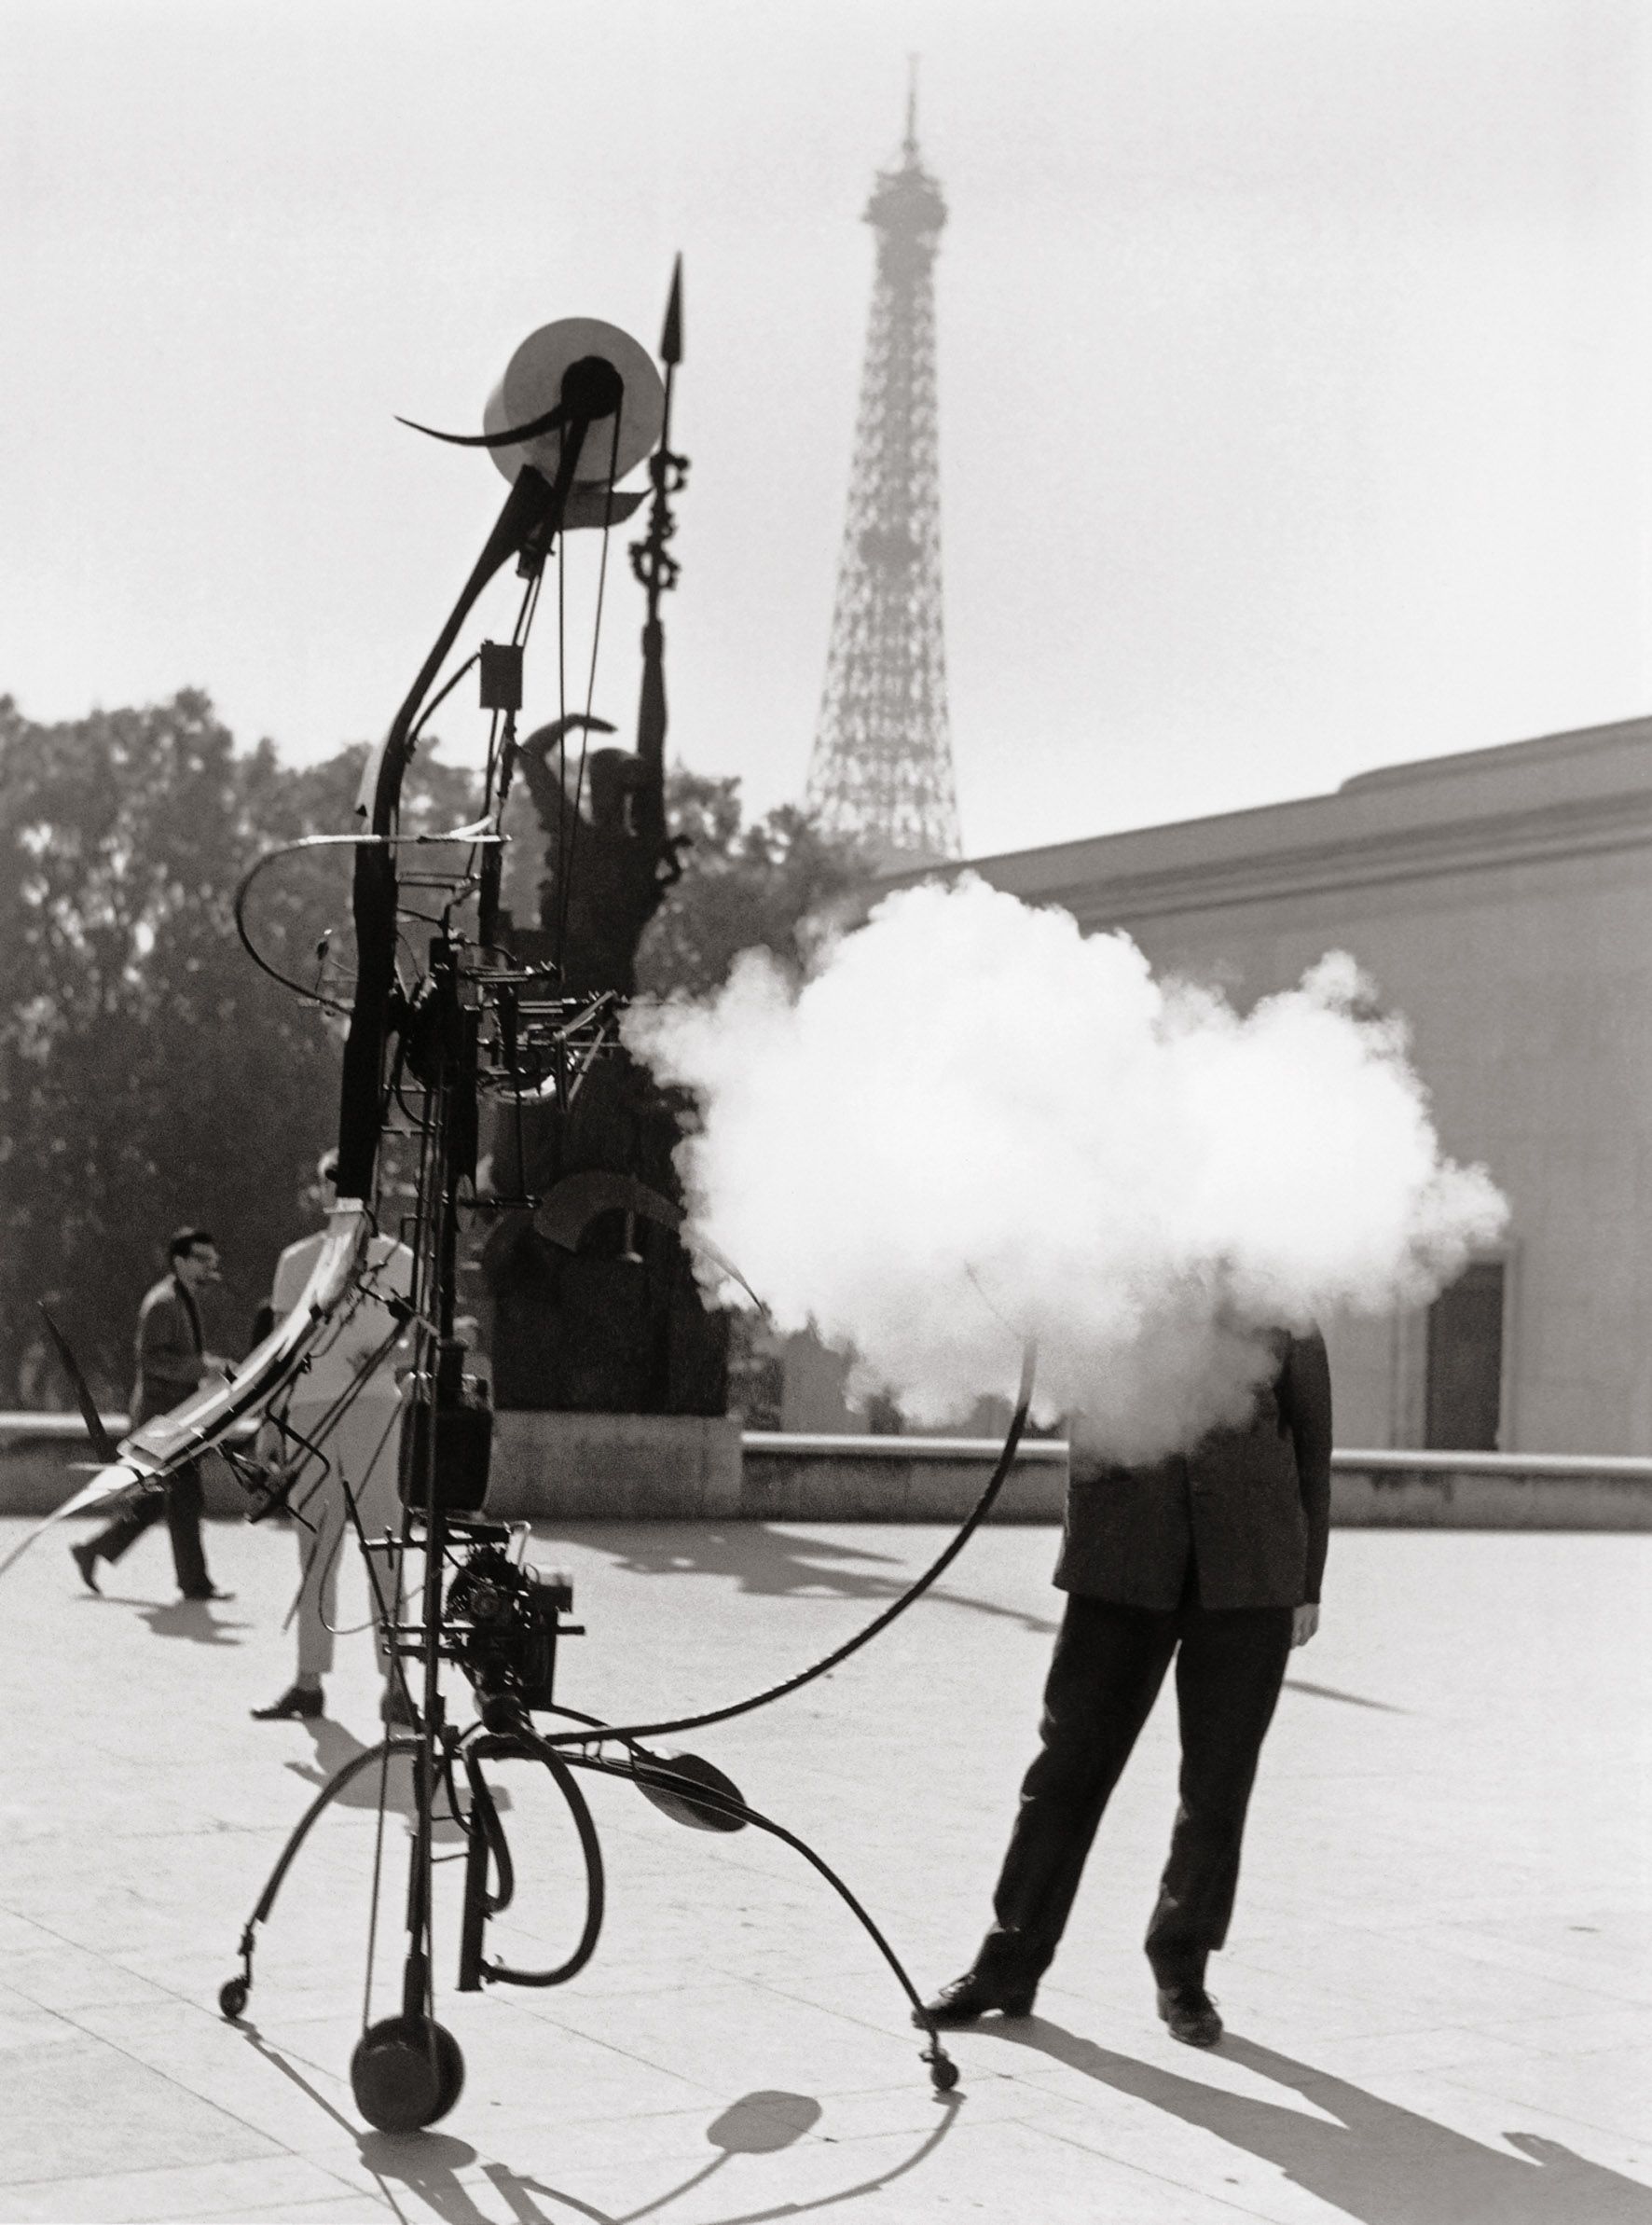 Robert Doisneau, le foto più belle del fotografo “umanista” - immagine 9